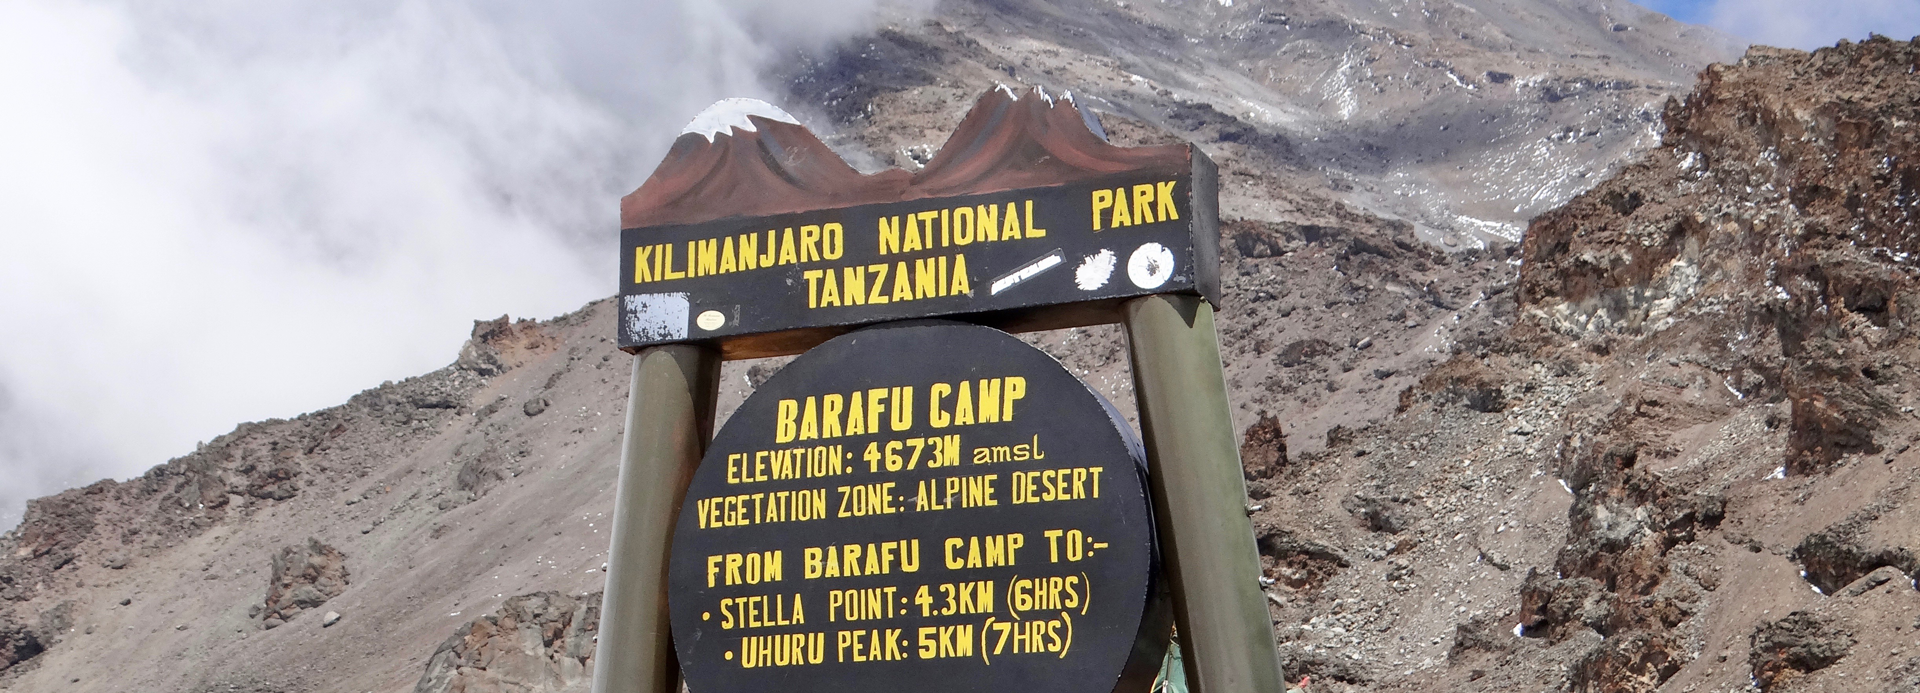 6 Days Kilimanjaro hike machame Route